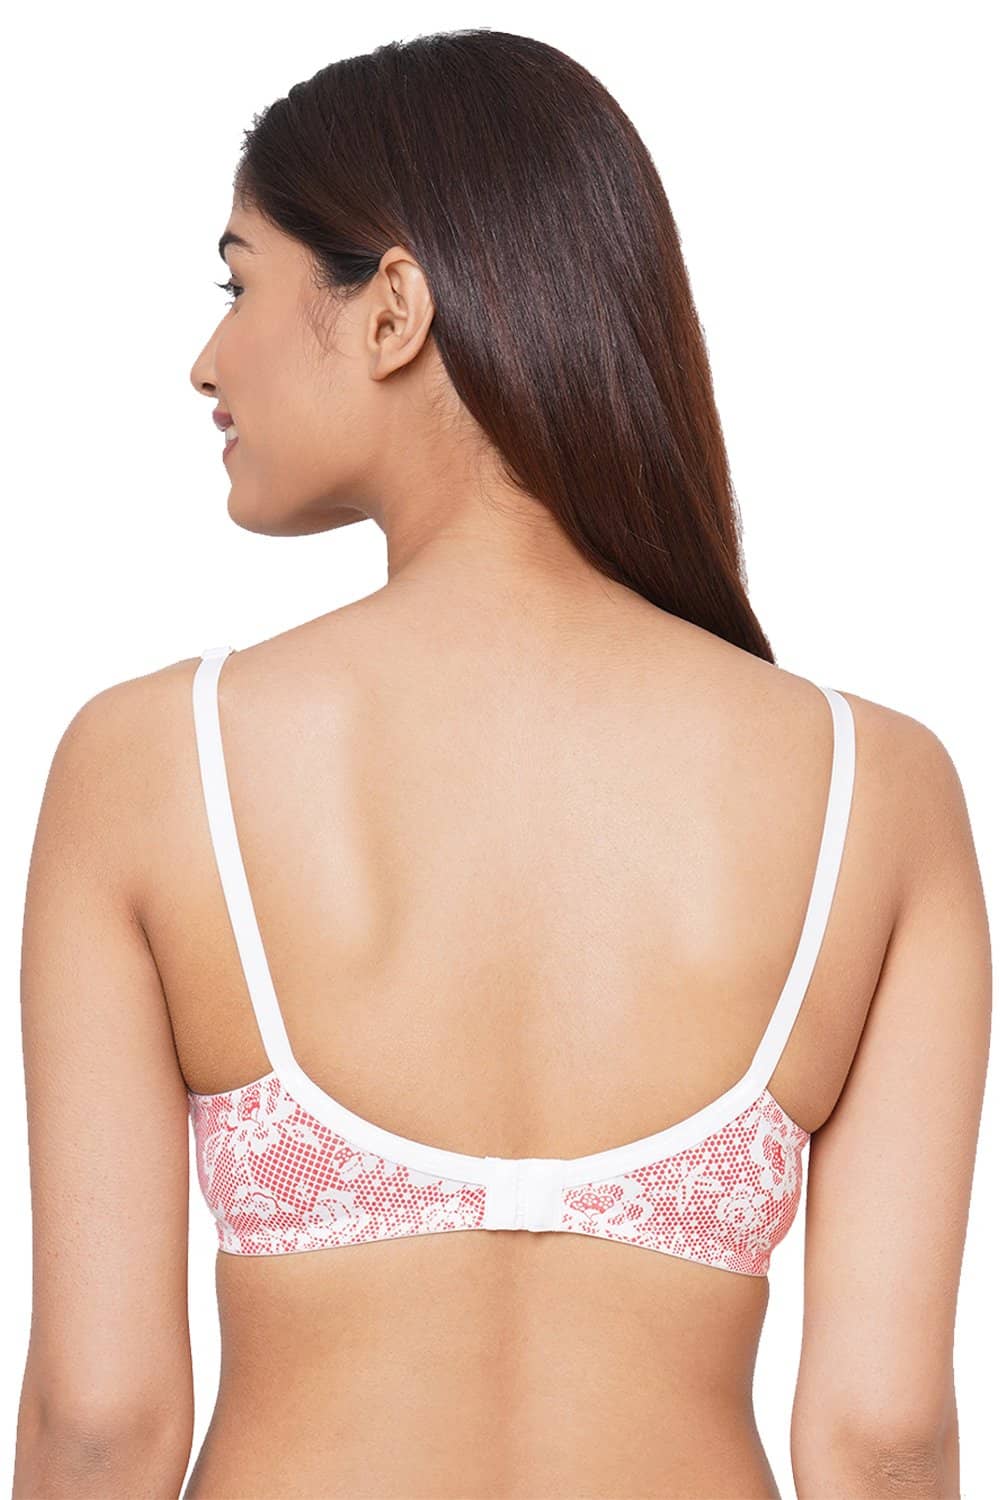 Buy Inner Sense Beige & Pink Full Coverage T-Shirt Bra - Pack of 3 for  Women's Online @ Tata CLiQ